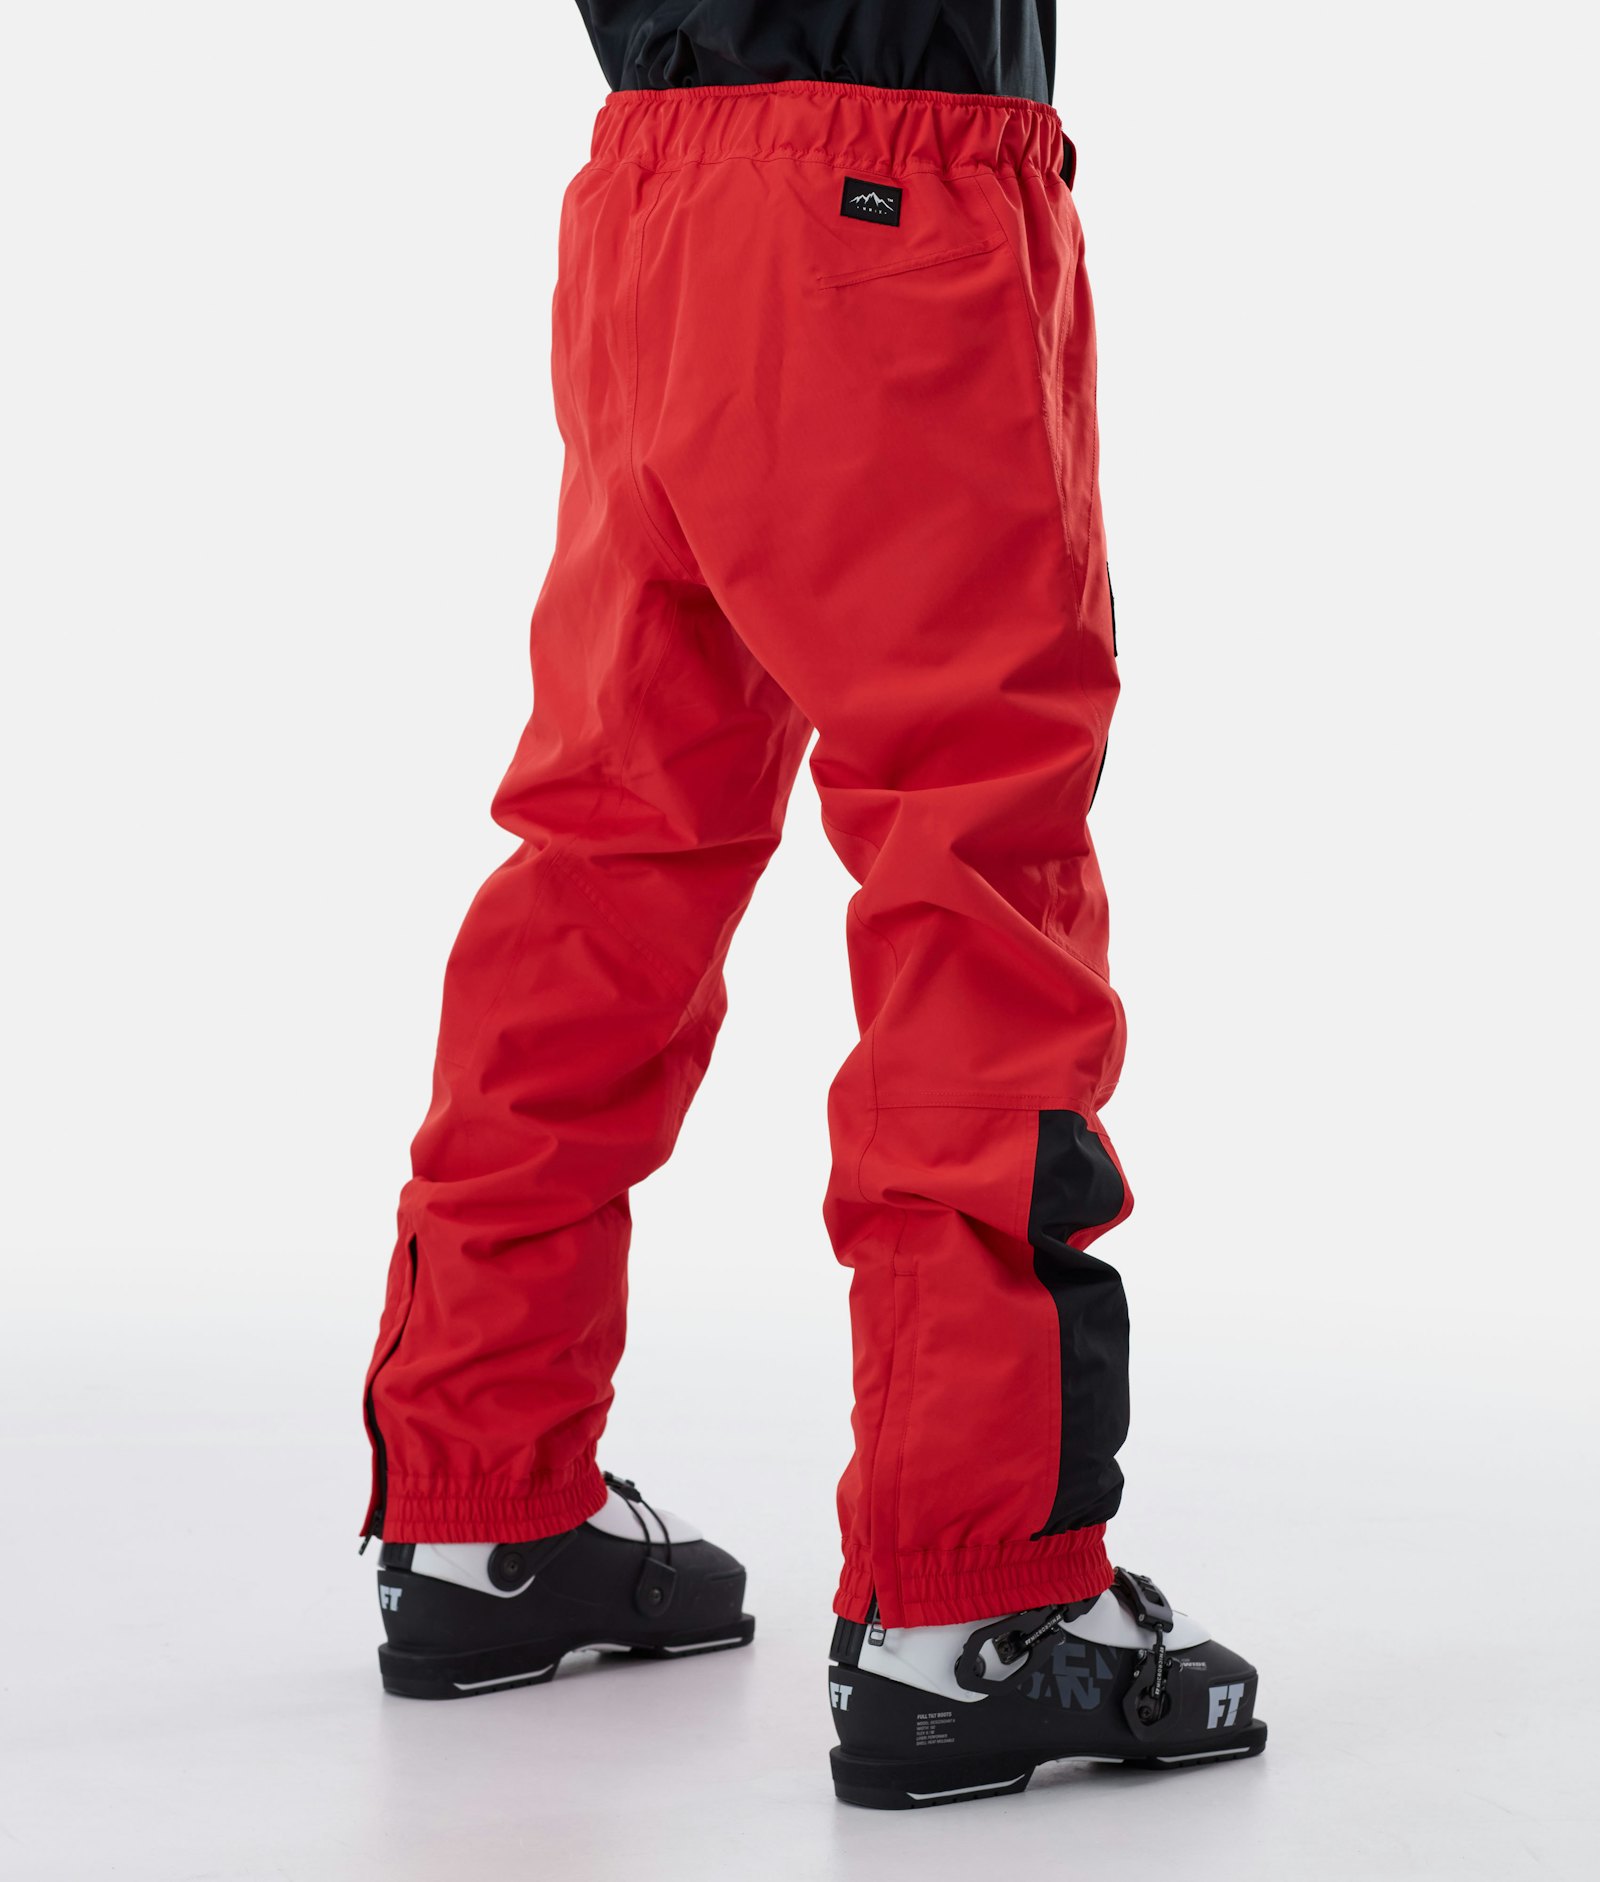 Dope JT Blizzard 2020 Pantaloni Sci Uomo Red